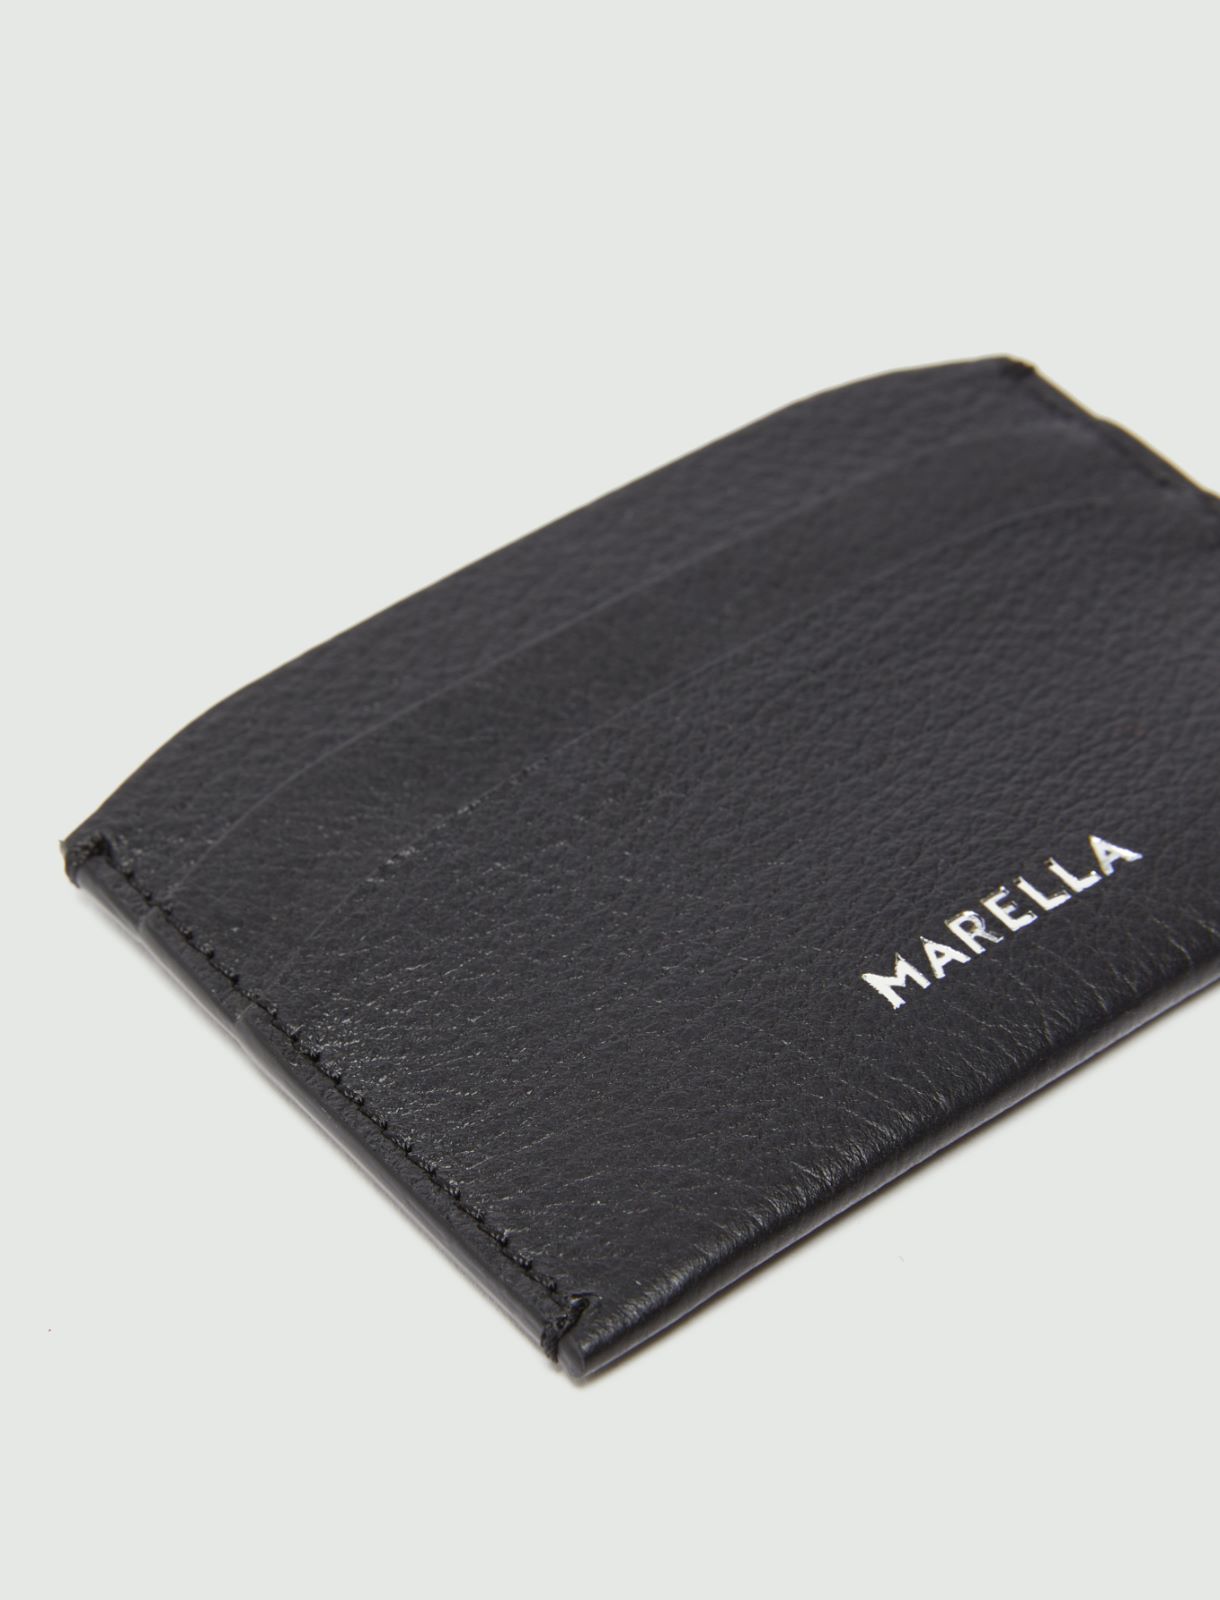 Leather card holder  - Dark grey - Marina Rinaldi - 2